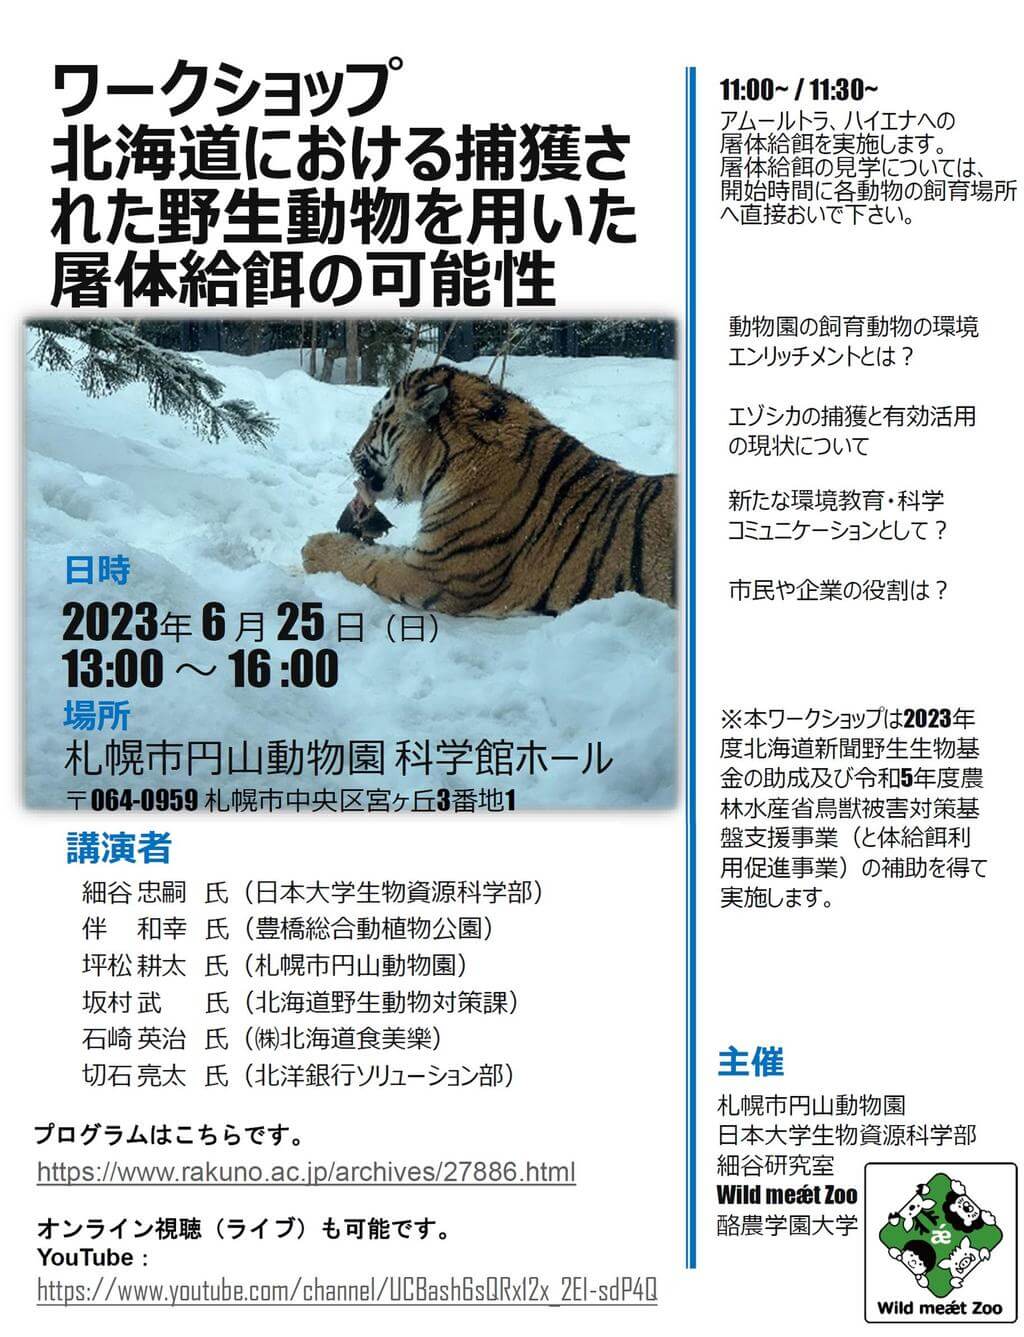 ワークショップ『北海道における捕獲された野生動物を用いた屠体給餌の可能性』